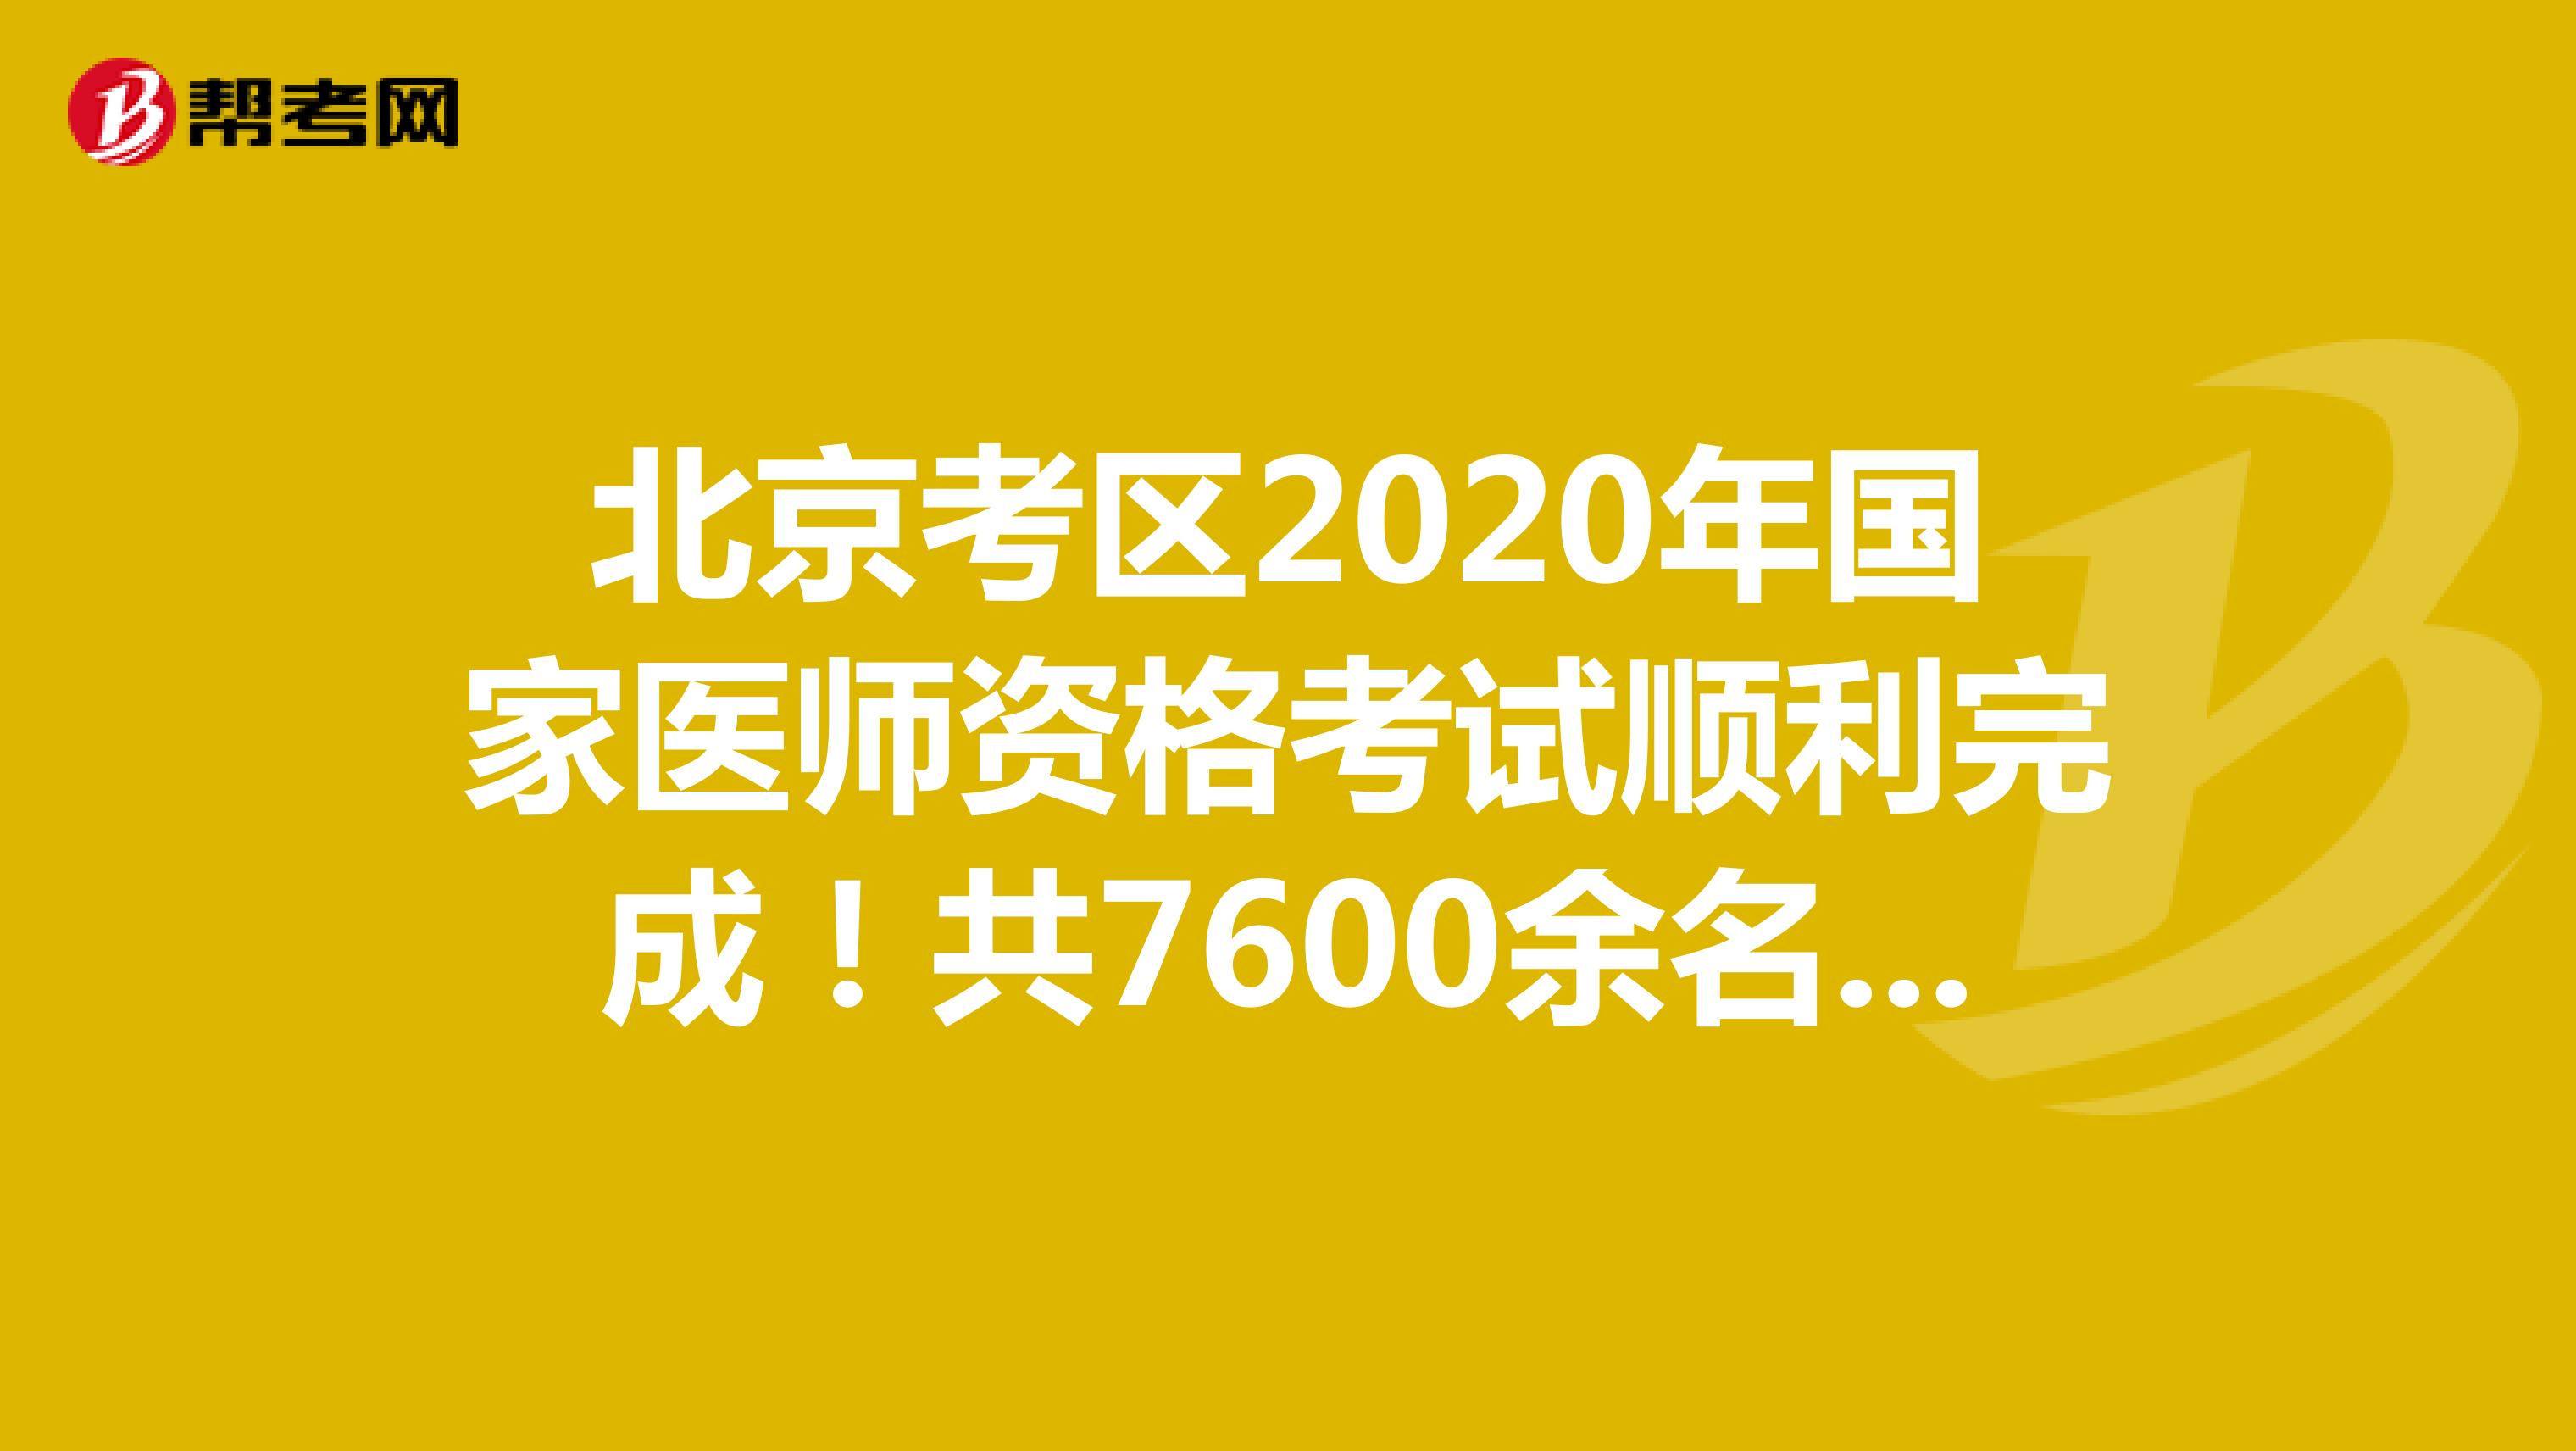 北京考区2020年国家医师资格考试顺利完成！共7600余名考生参考！